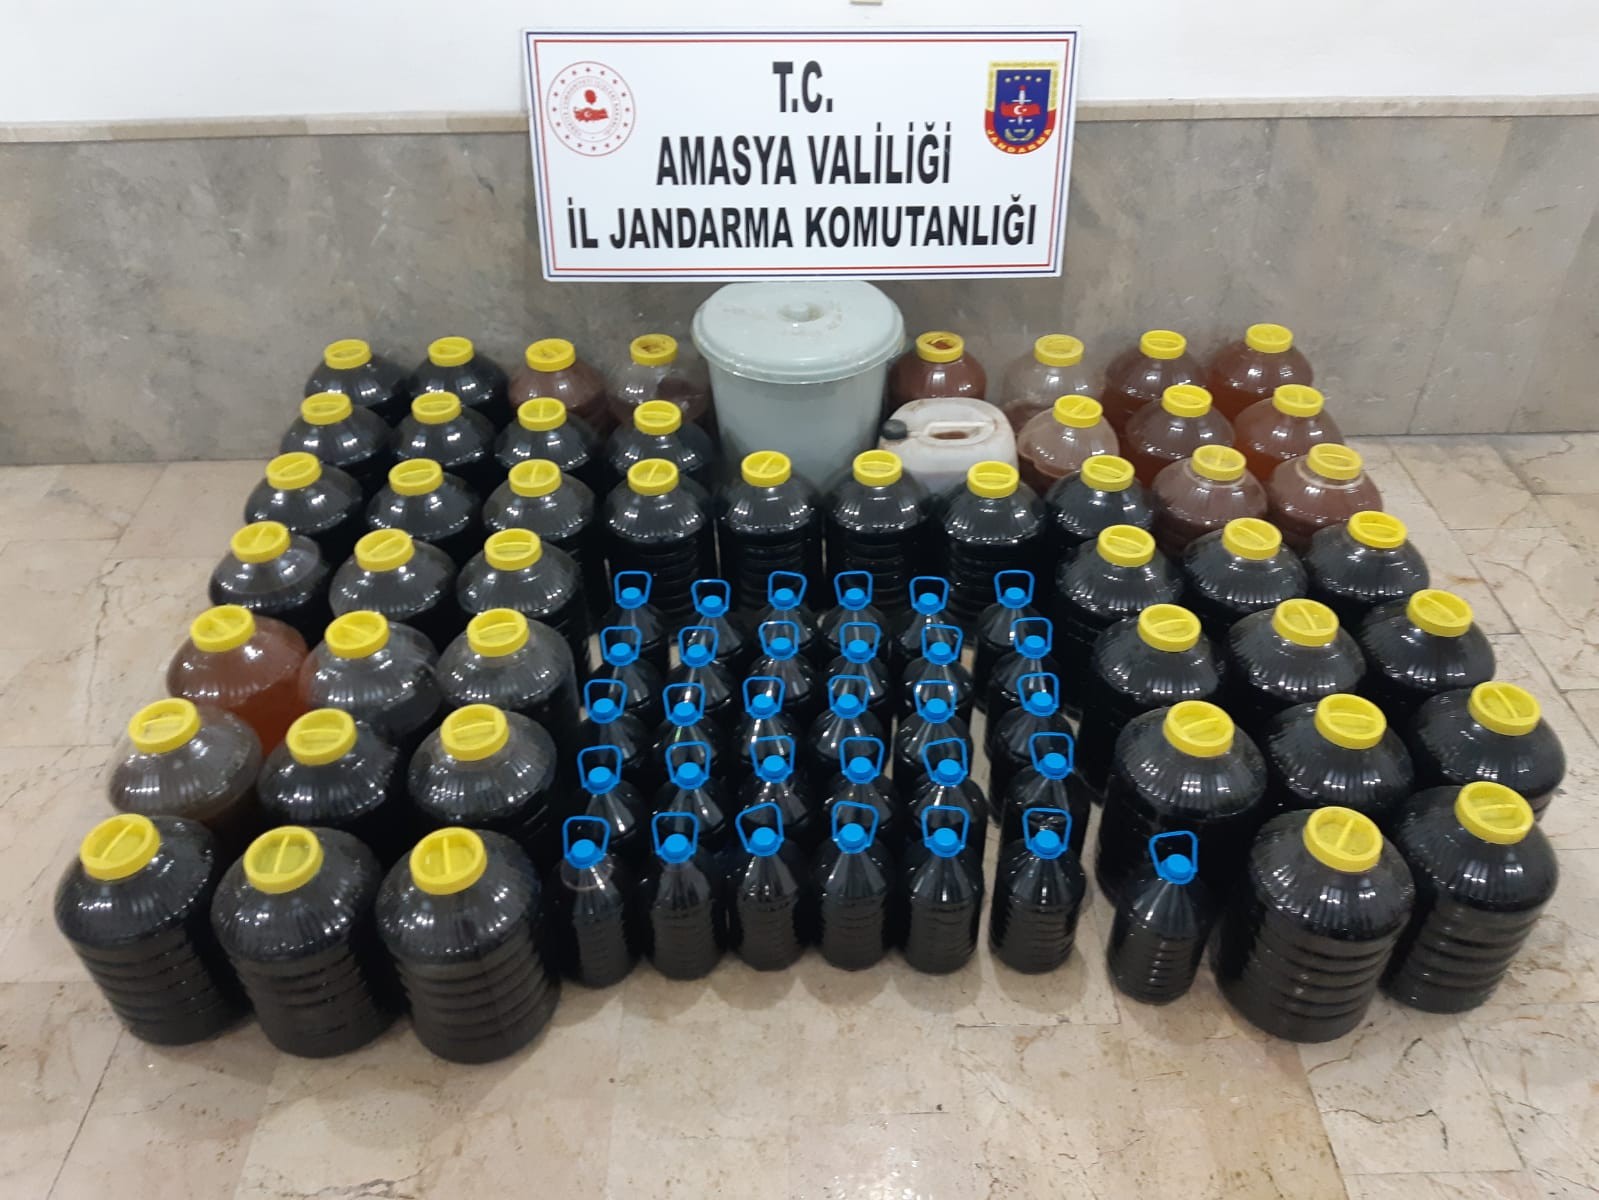 Amasya’da bin 200 litre kaçak içki ele geçirildi